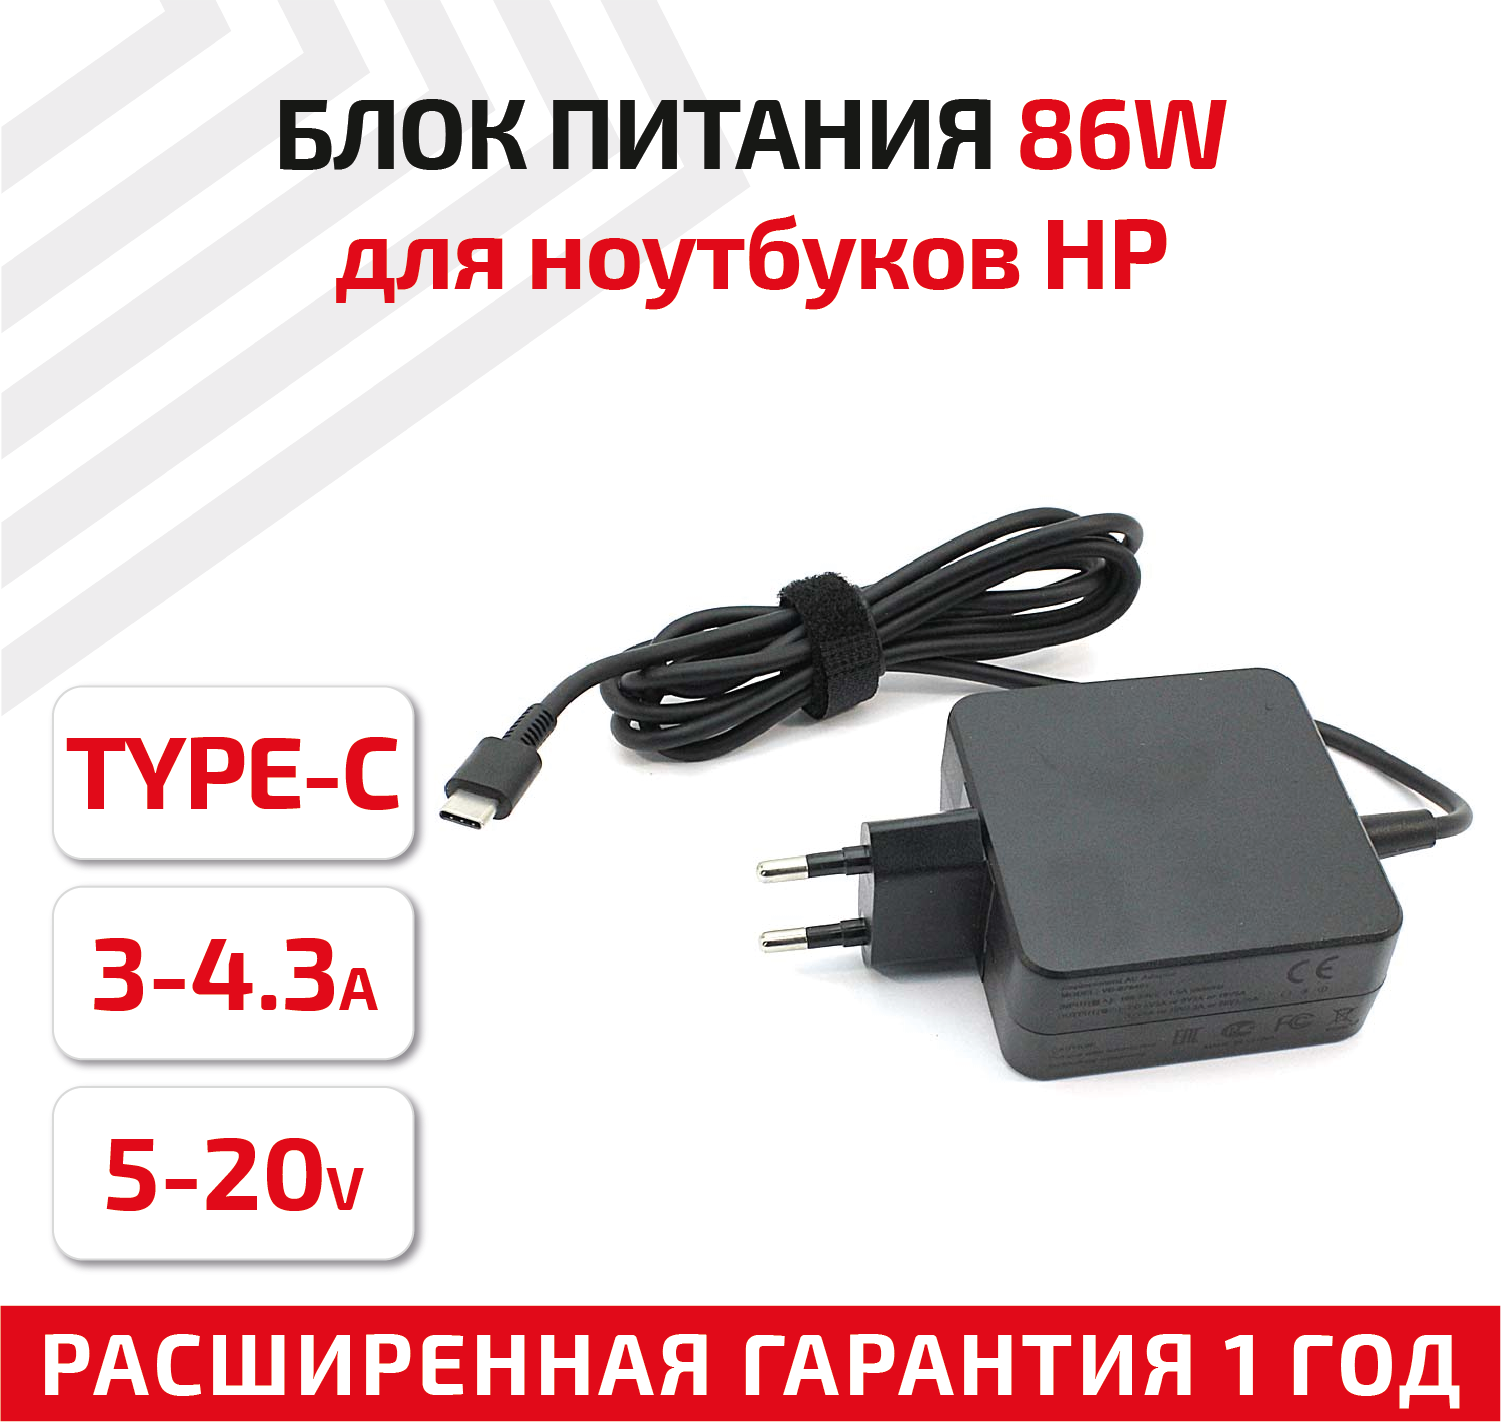 Зарядное устройство (блок питания/зарядка) для ноутбука HP 5В-20В, 3А-4.3А, Type-C, квадратный корпус